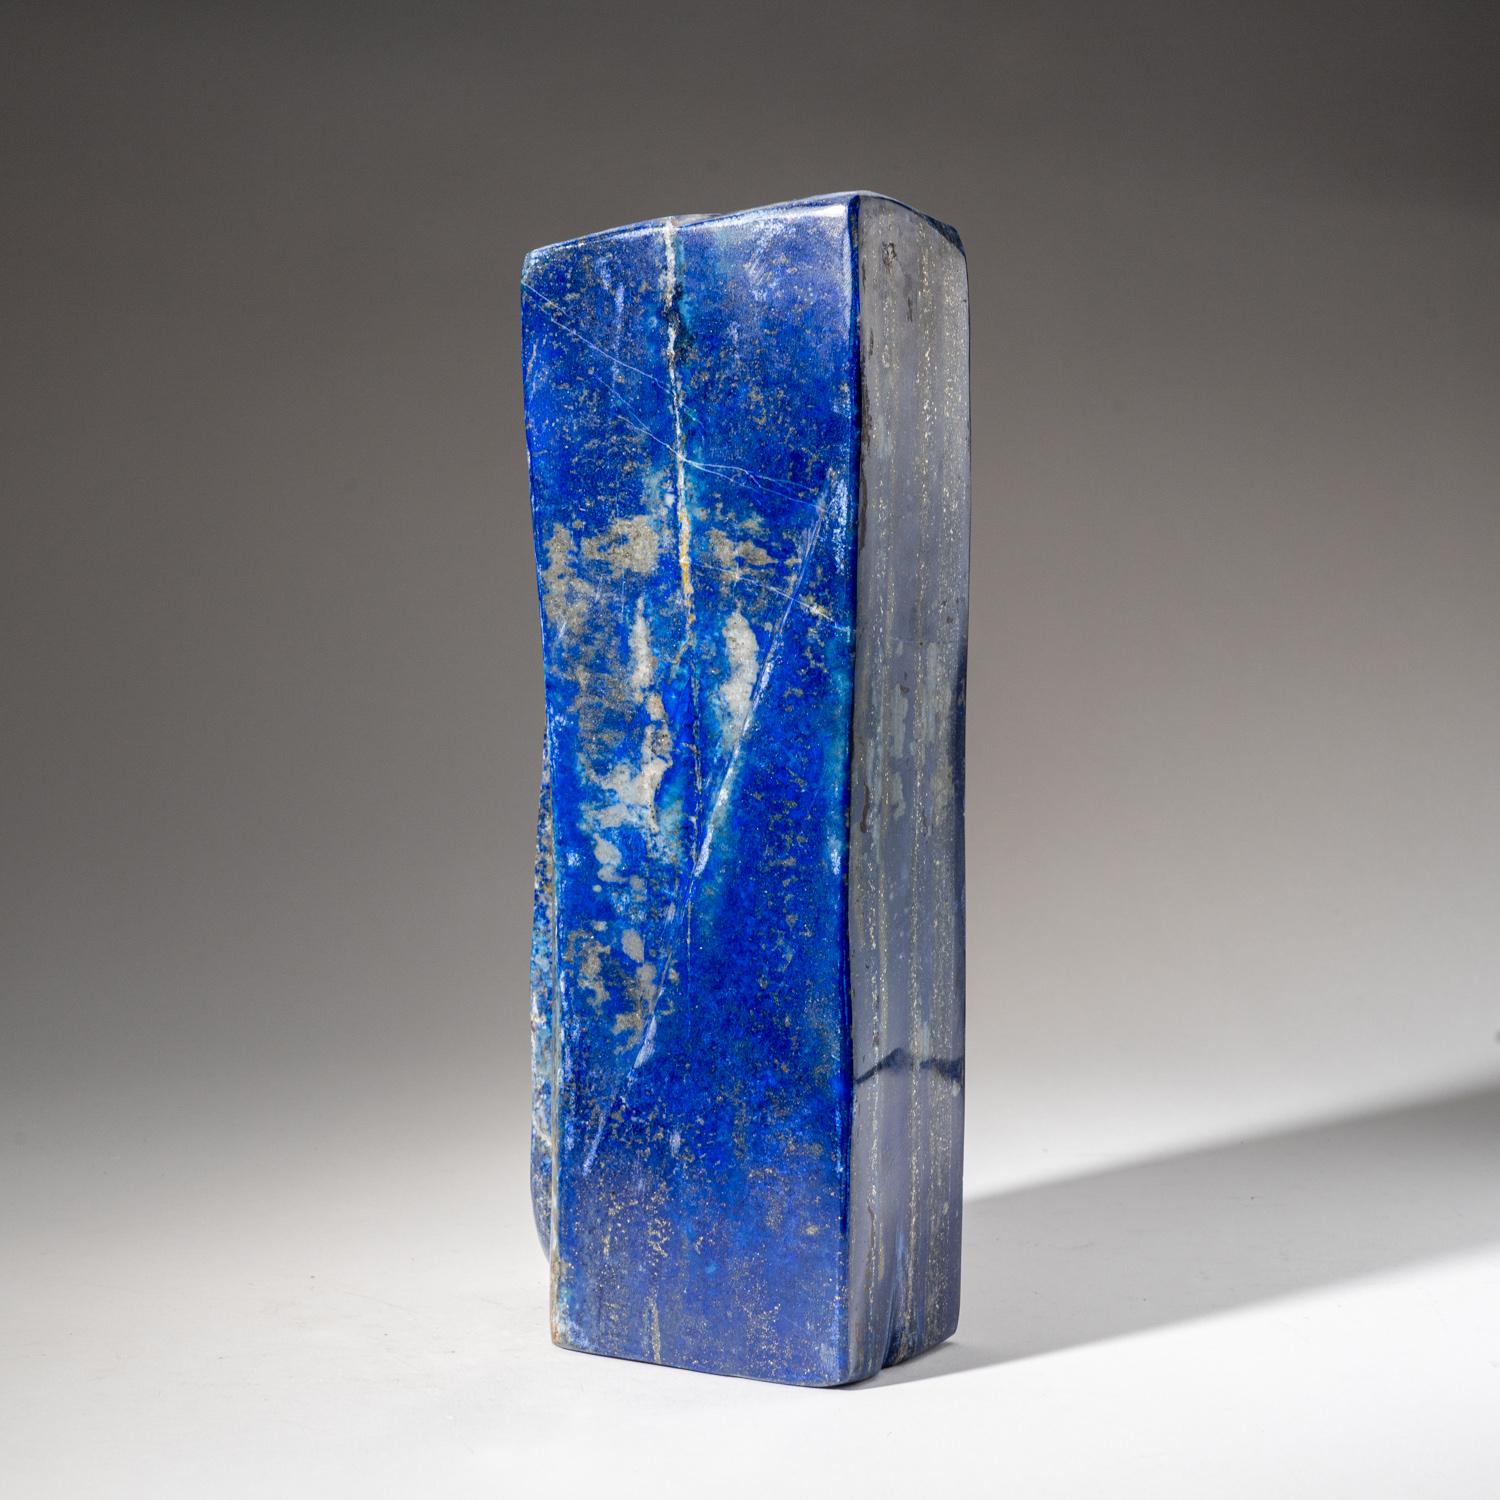 Schöne handpolierte freie Form aus natürlichem afghanischem Lapislazuli in AAA-Qualität.  Dieses Exemplar hat eine satte, elektrisch-königsblaue Farbe, die mit funkelnden Pyrit-Mikrokristallen angereichert ist.

Lapis Lazuli ist ein kraftvoller